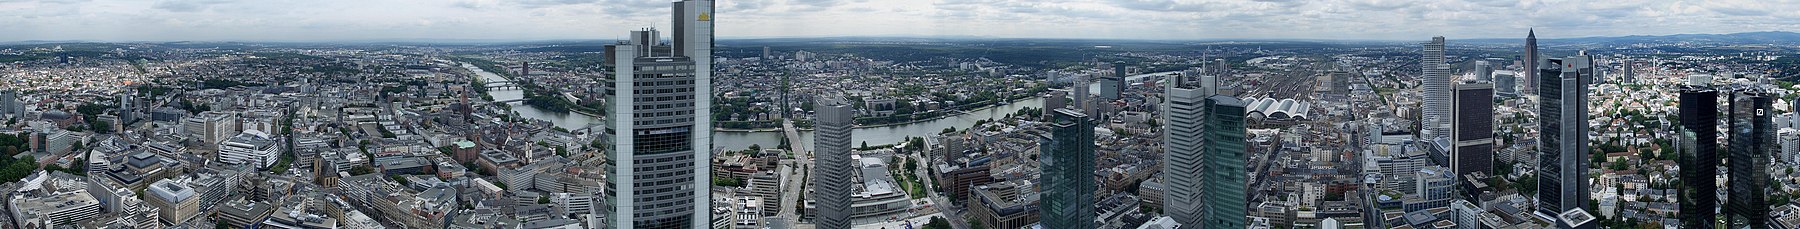 Panorama över Frankfurt am Main